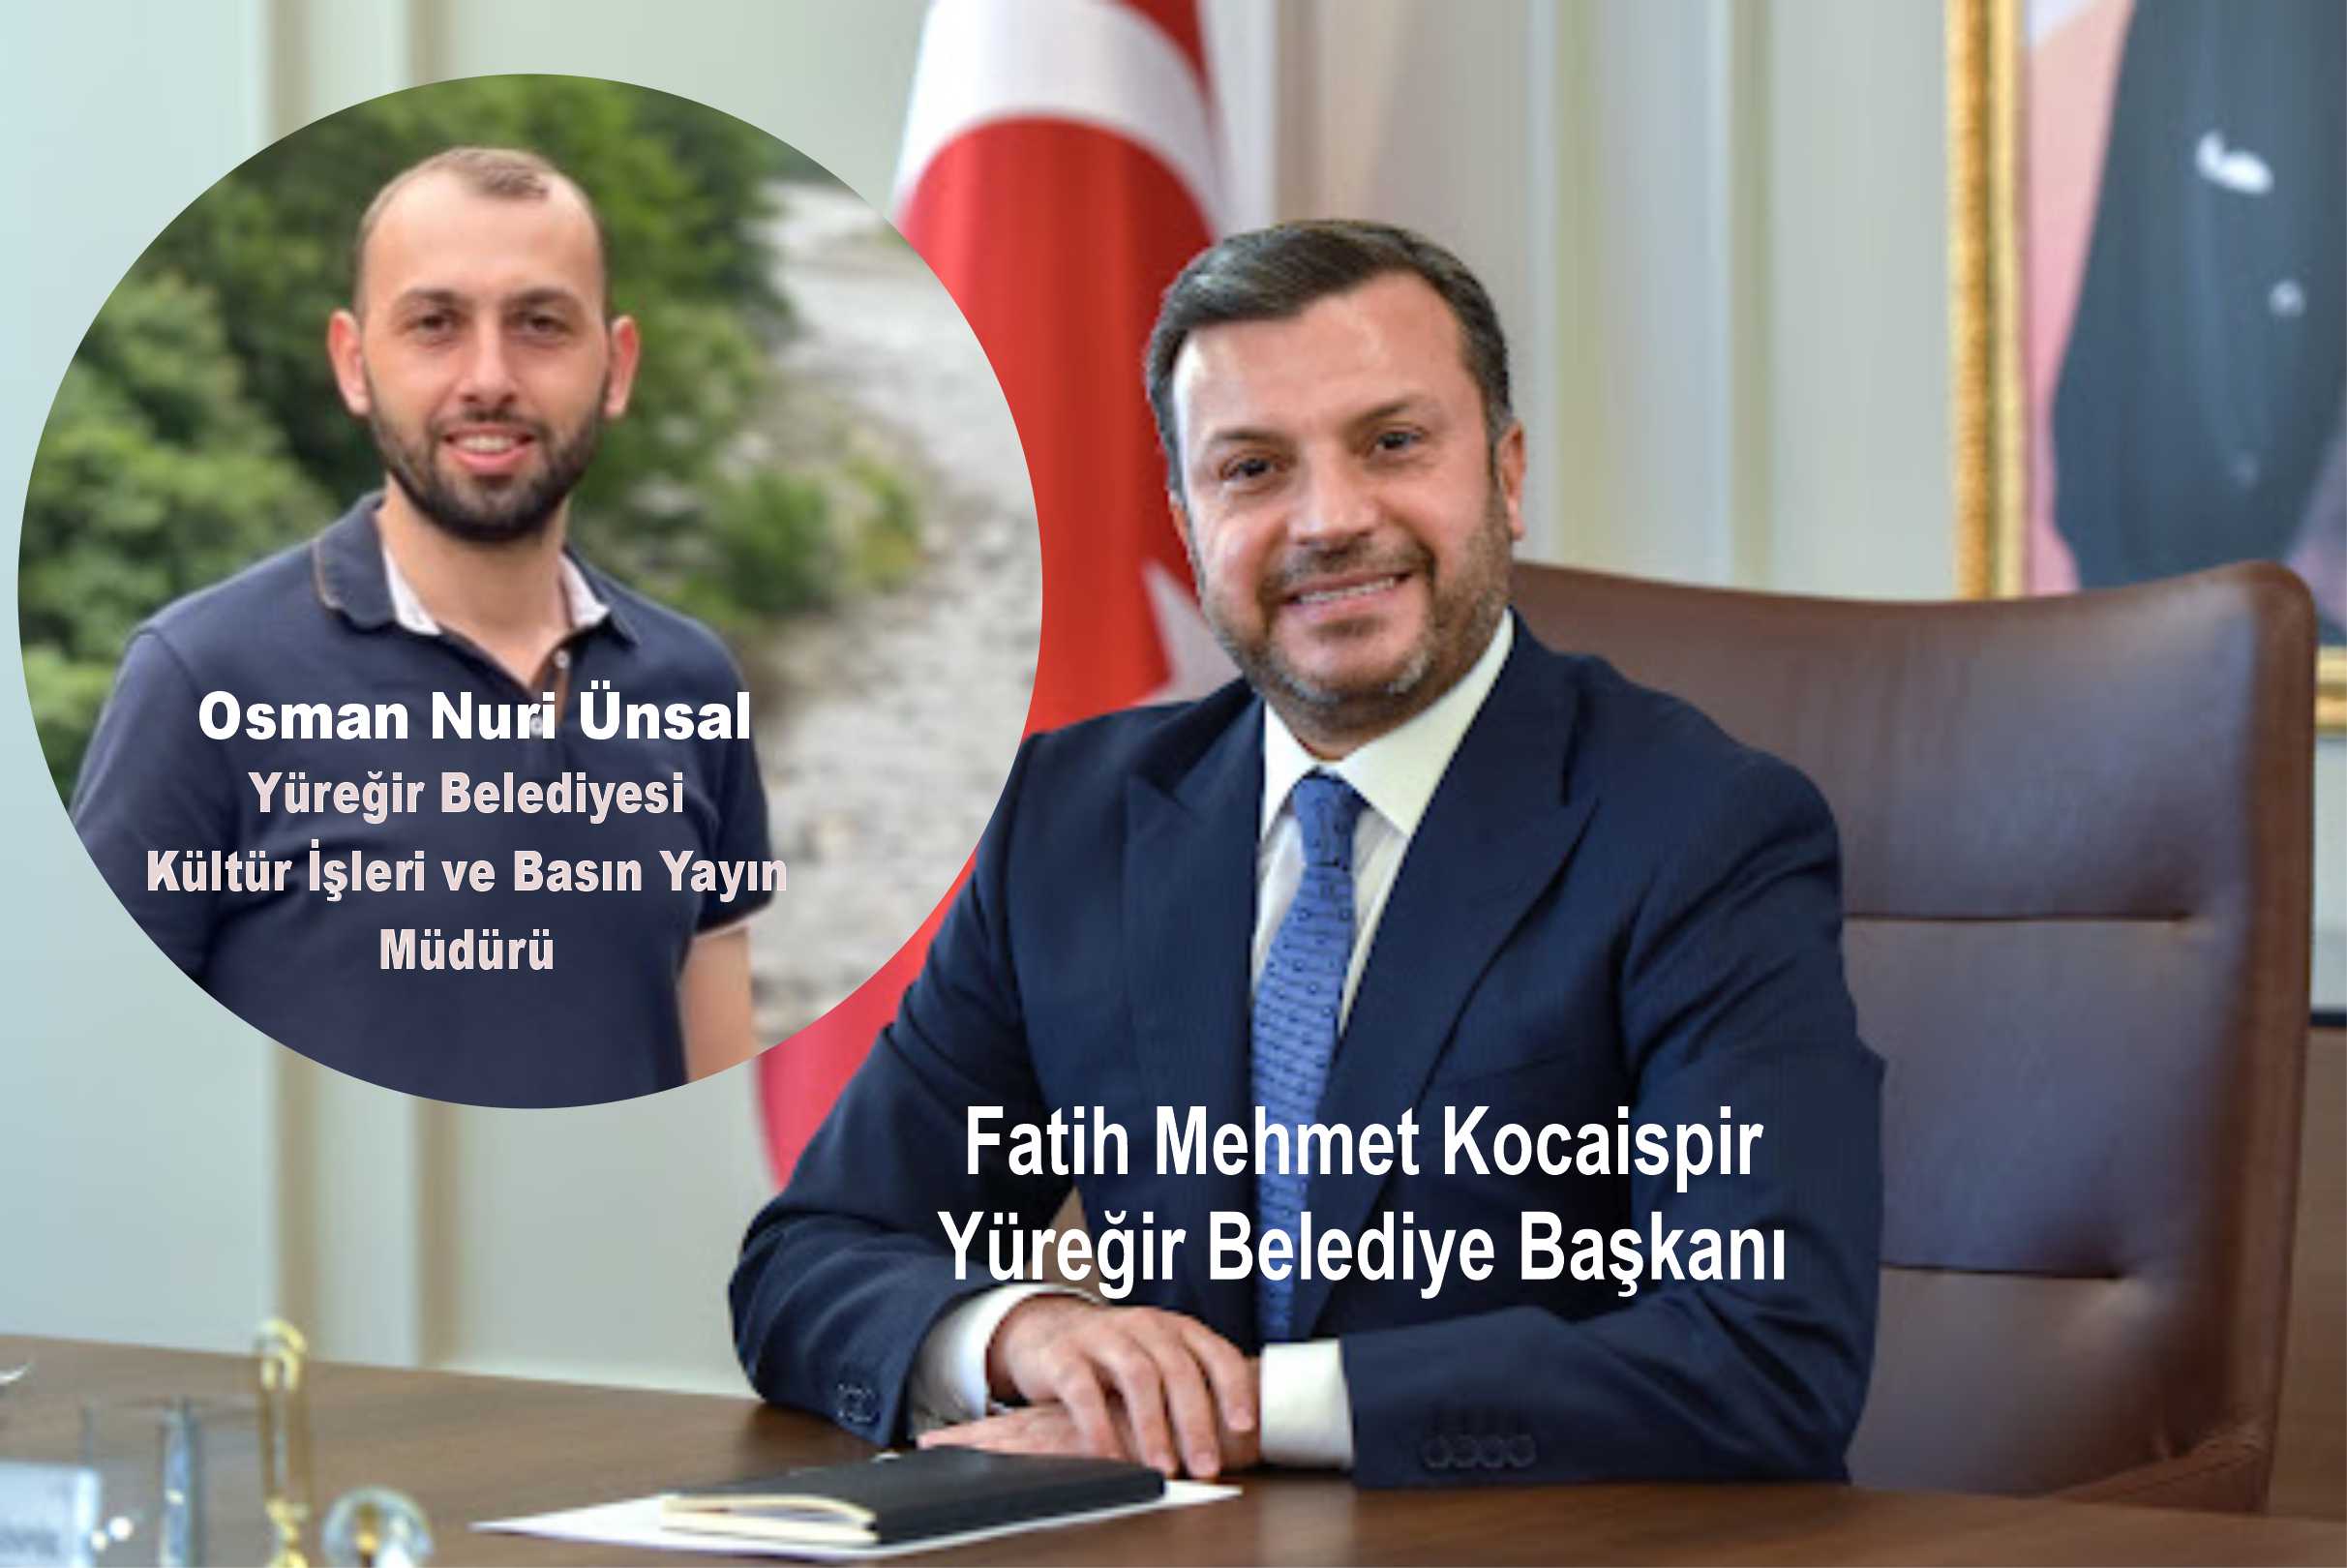 Yüreğir Belediye Başkanı (FATİH MEHMET KOCAİSPİR)DİKKAT